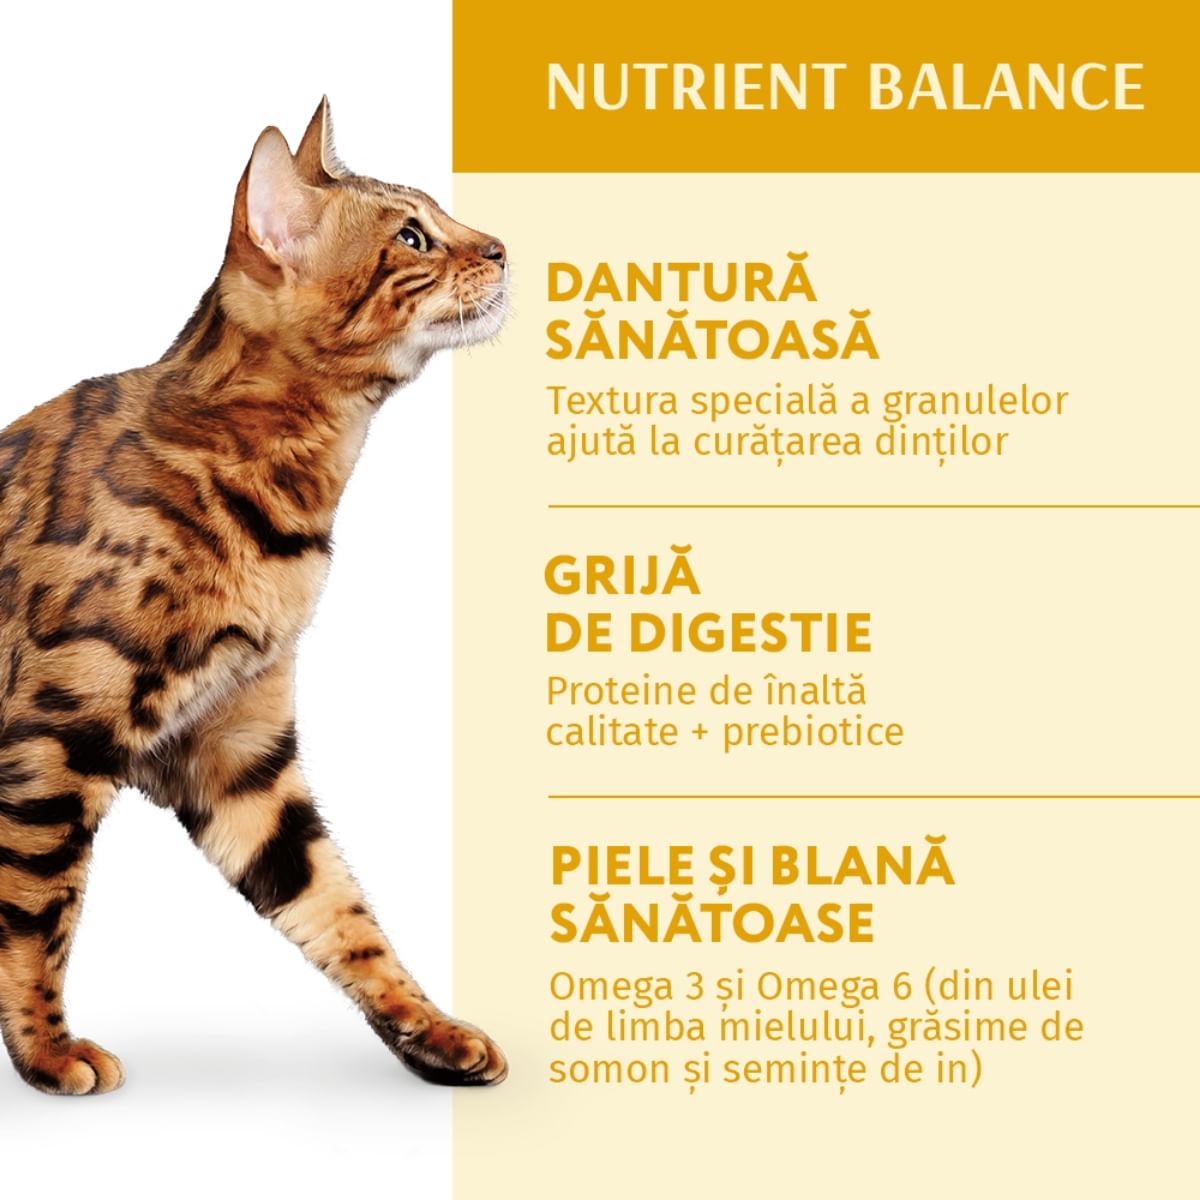 OPTIMEAL, Pui, hrană uscată pisici, 1.5kg